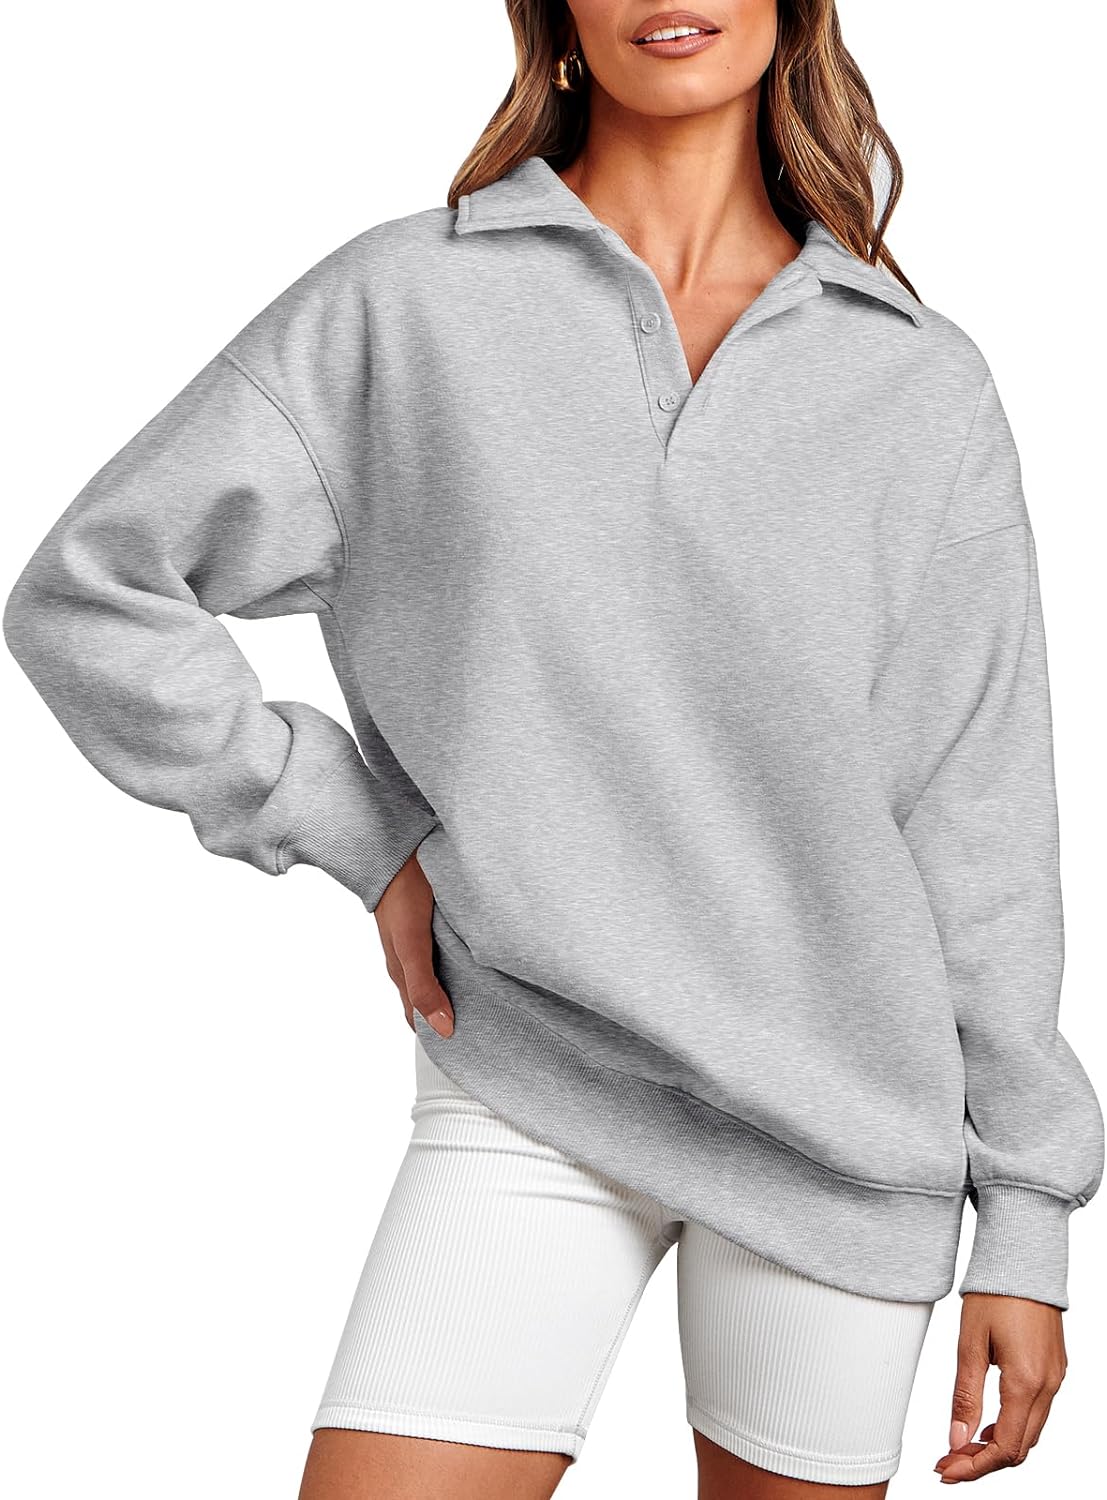 Caracilia Oversized Sweatshirt for Women Fleece Long Sleeve